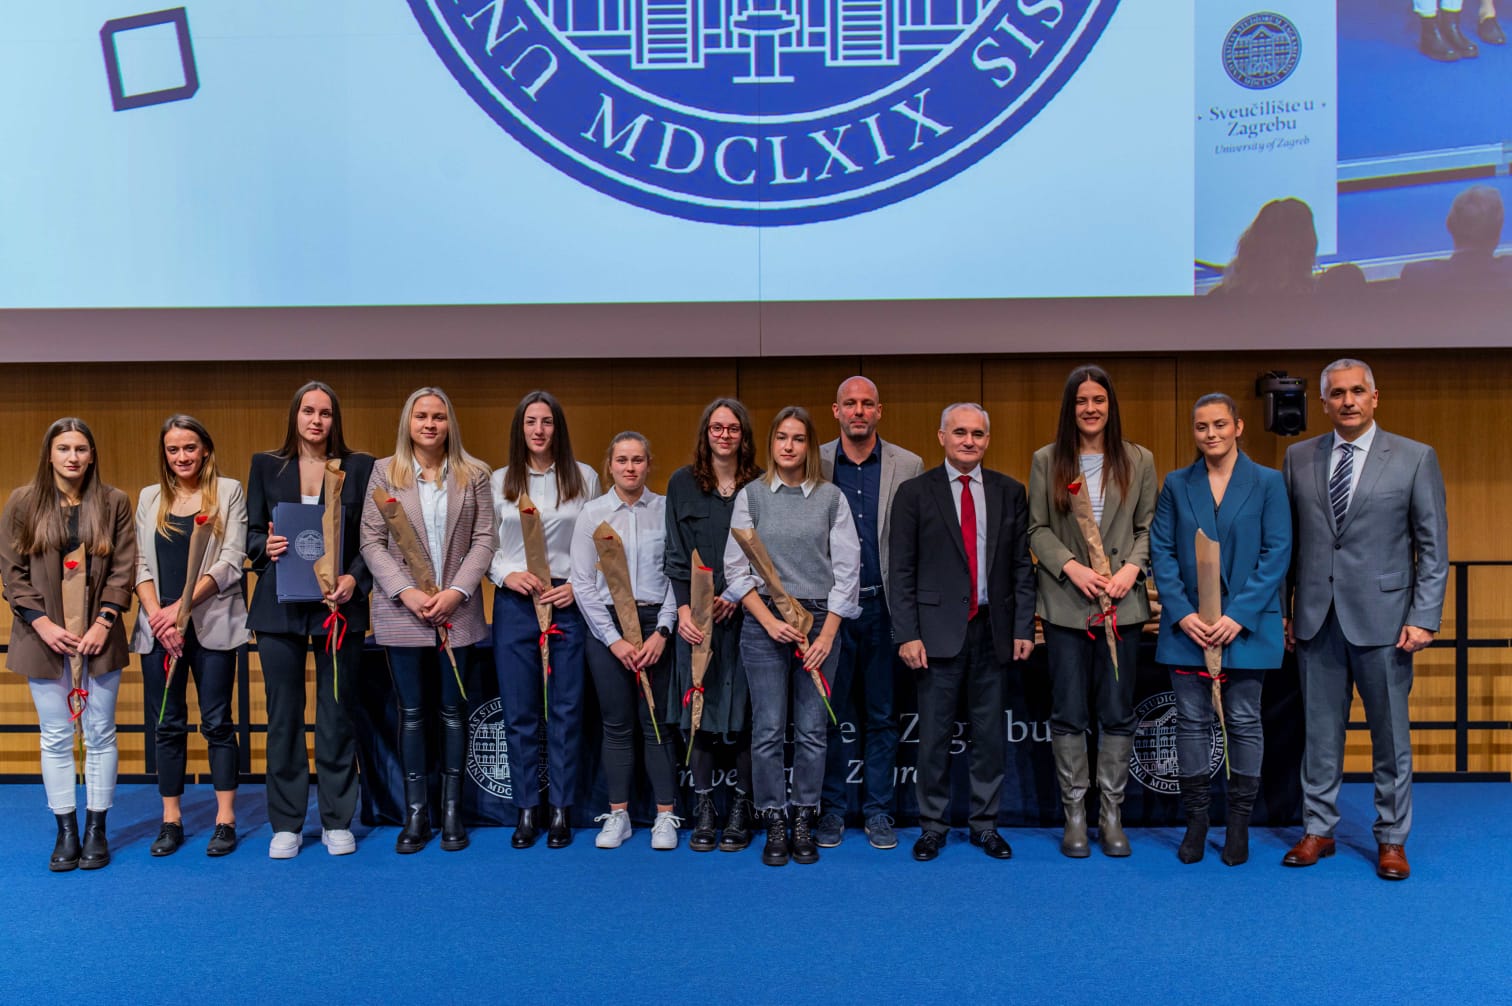 Dobitnici nagrade za sportske uspjehe Sveučilišta u Zagrebu